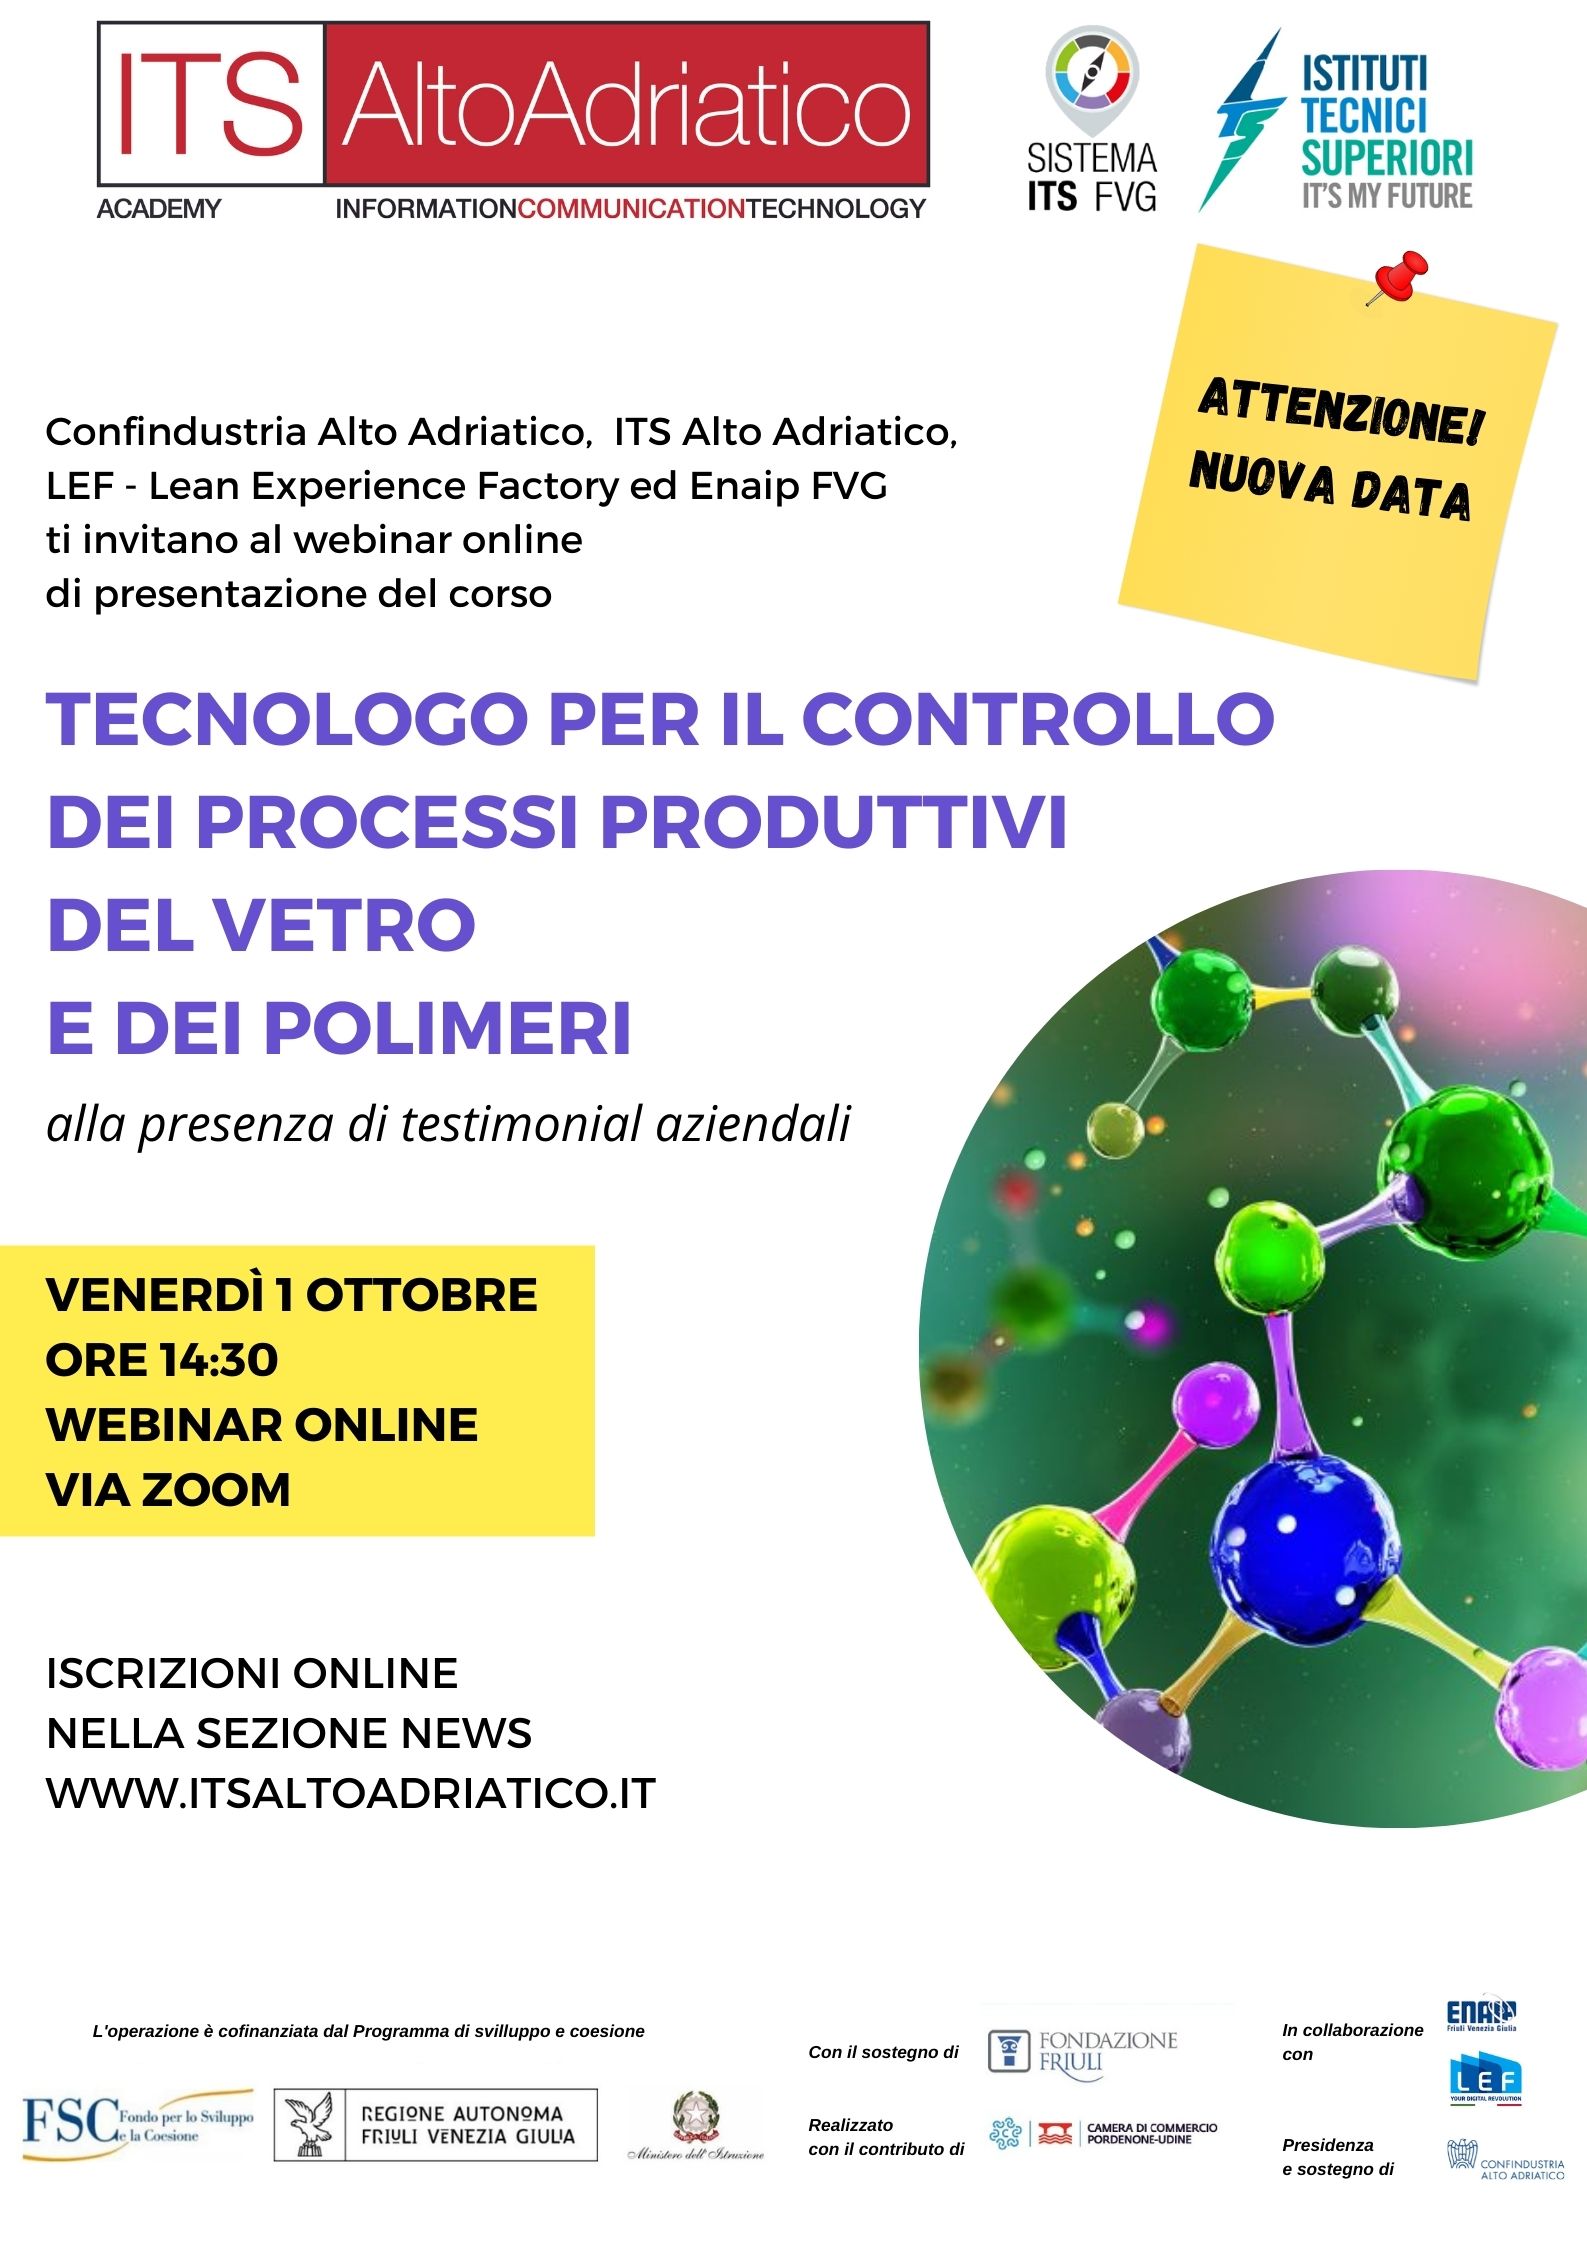 Rinviato a venerdì 1 ottobre ore 14:30 il nuovo incontro di presentazione del 1° corso ITS in Italia dedicato al controllo dei processi produttivi di vetro e polimeri